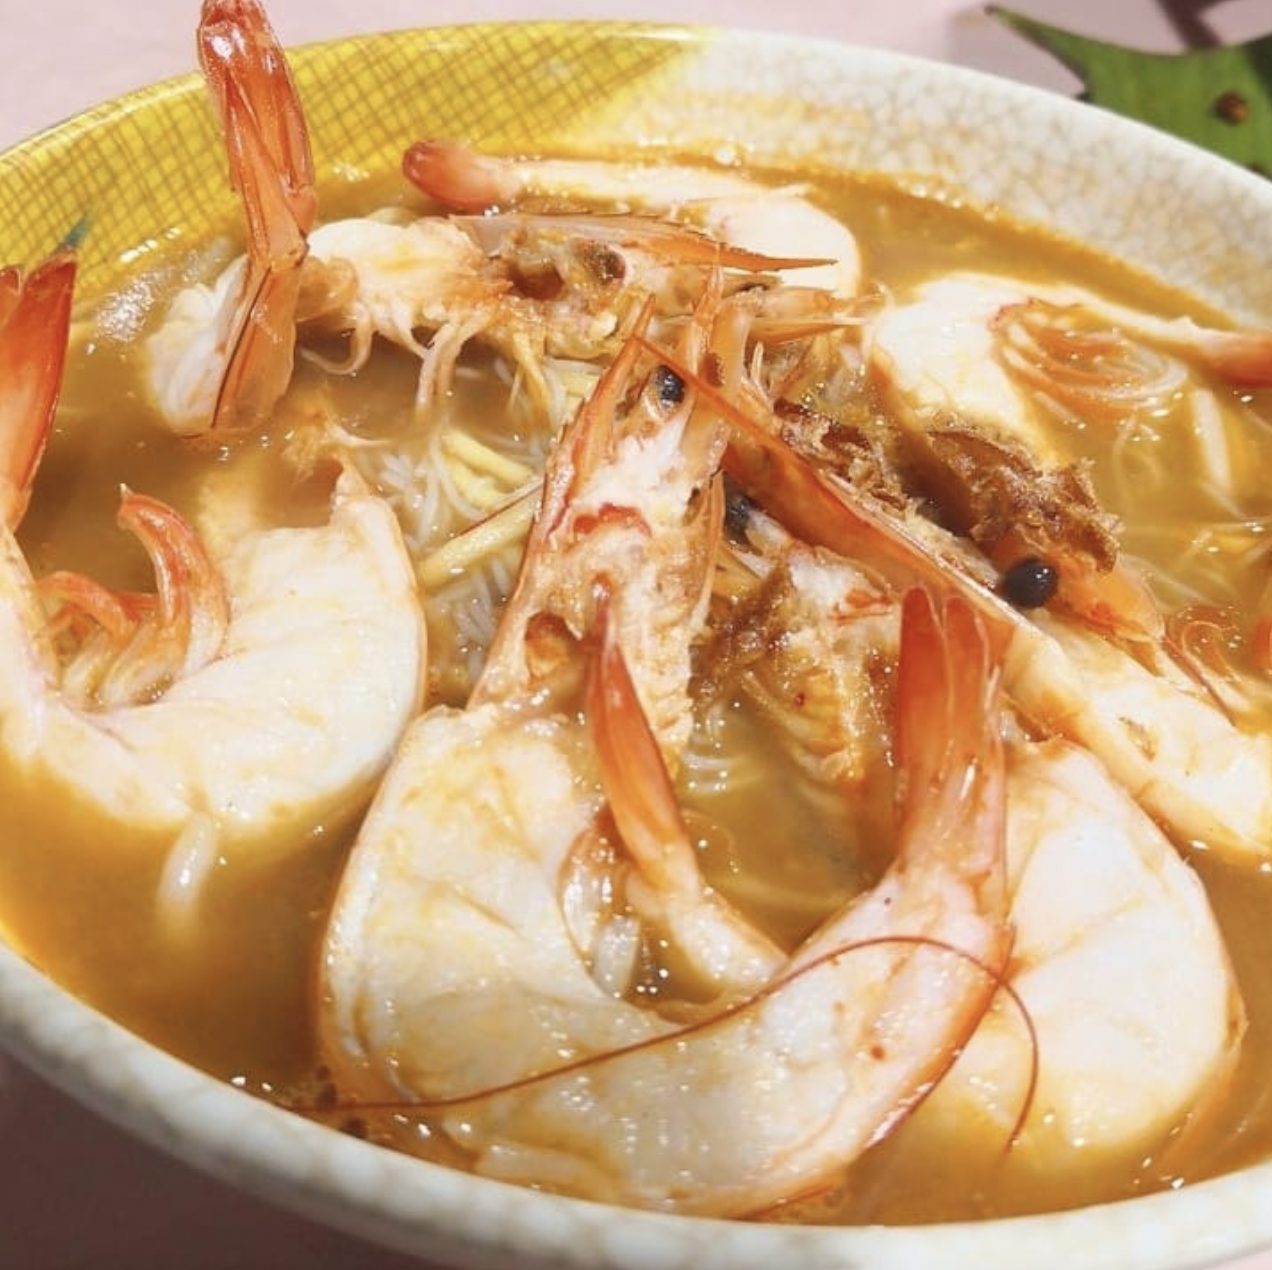 Pasir ris - Image of prawn mee